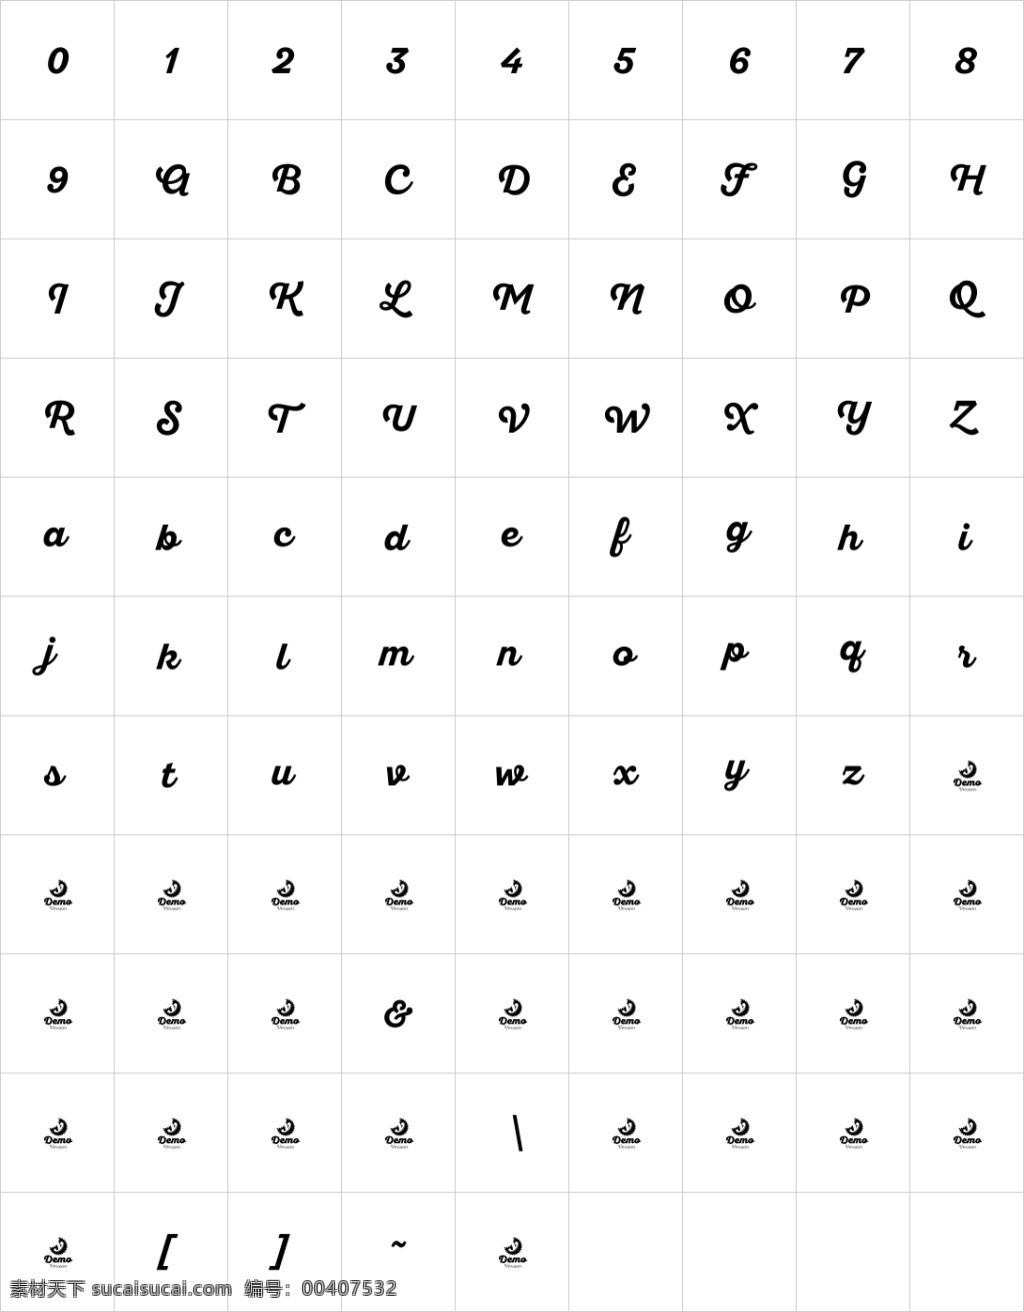 santelia 英文 字体 英文字体 字体素材 英文设计 英文素材 手写字体 ttf 字体包